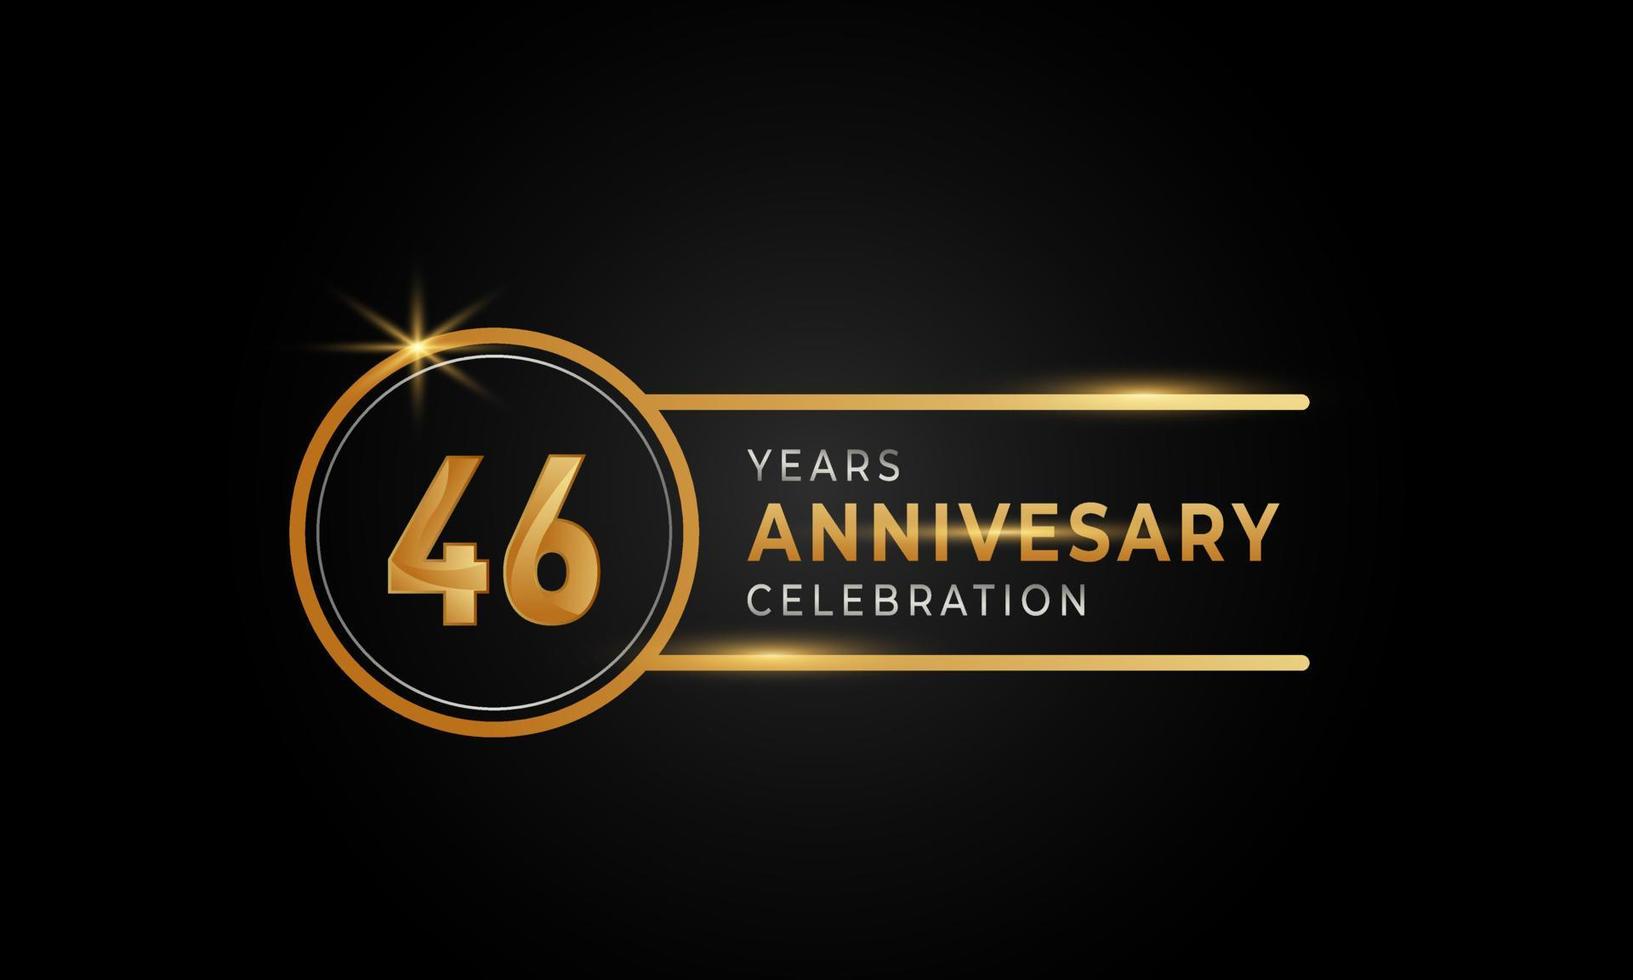 46-årsjubileumsfirande gyllene och silverfärgade med cirkelring för festevenemang, bröllop, gratulationskort och inbjudan isolerad på svart bakgrund vektor